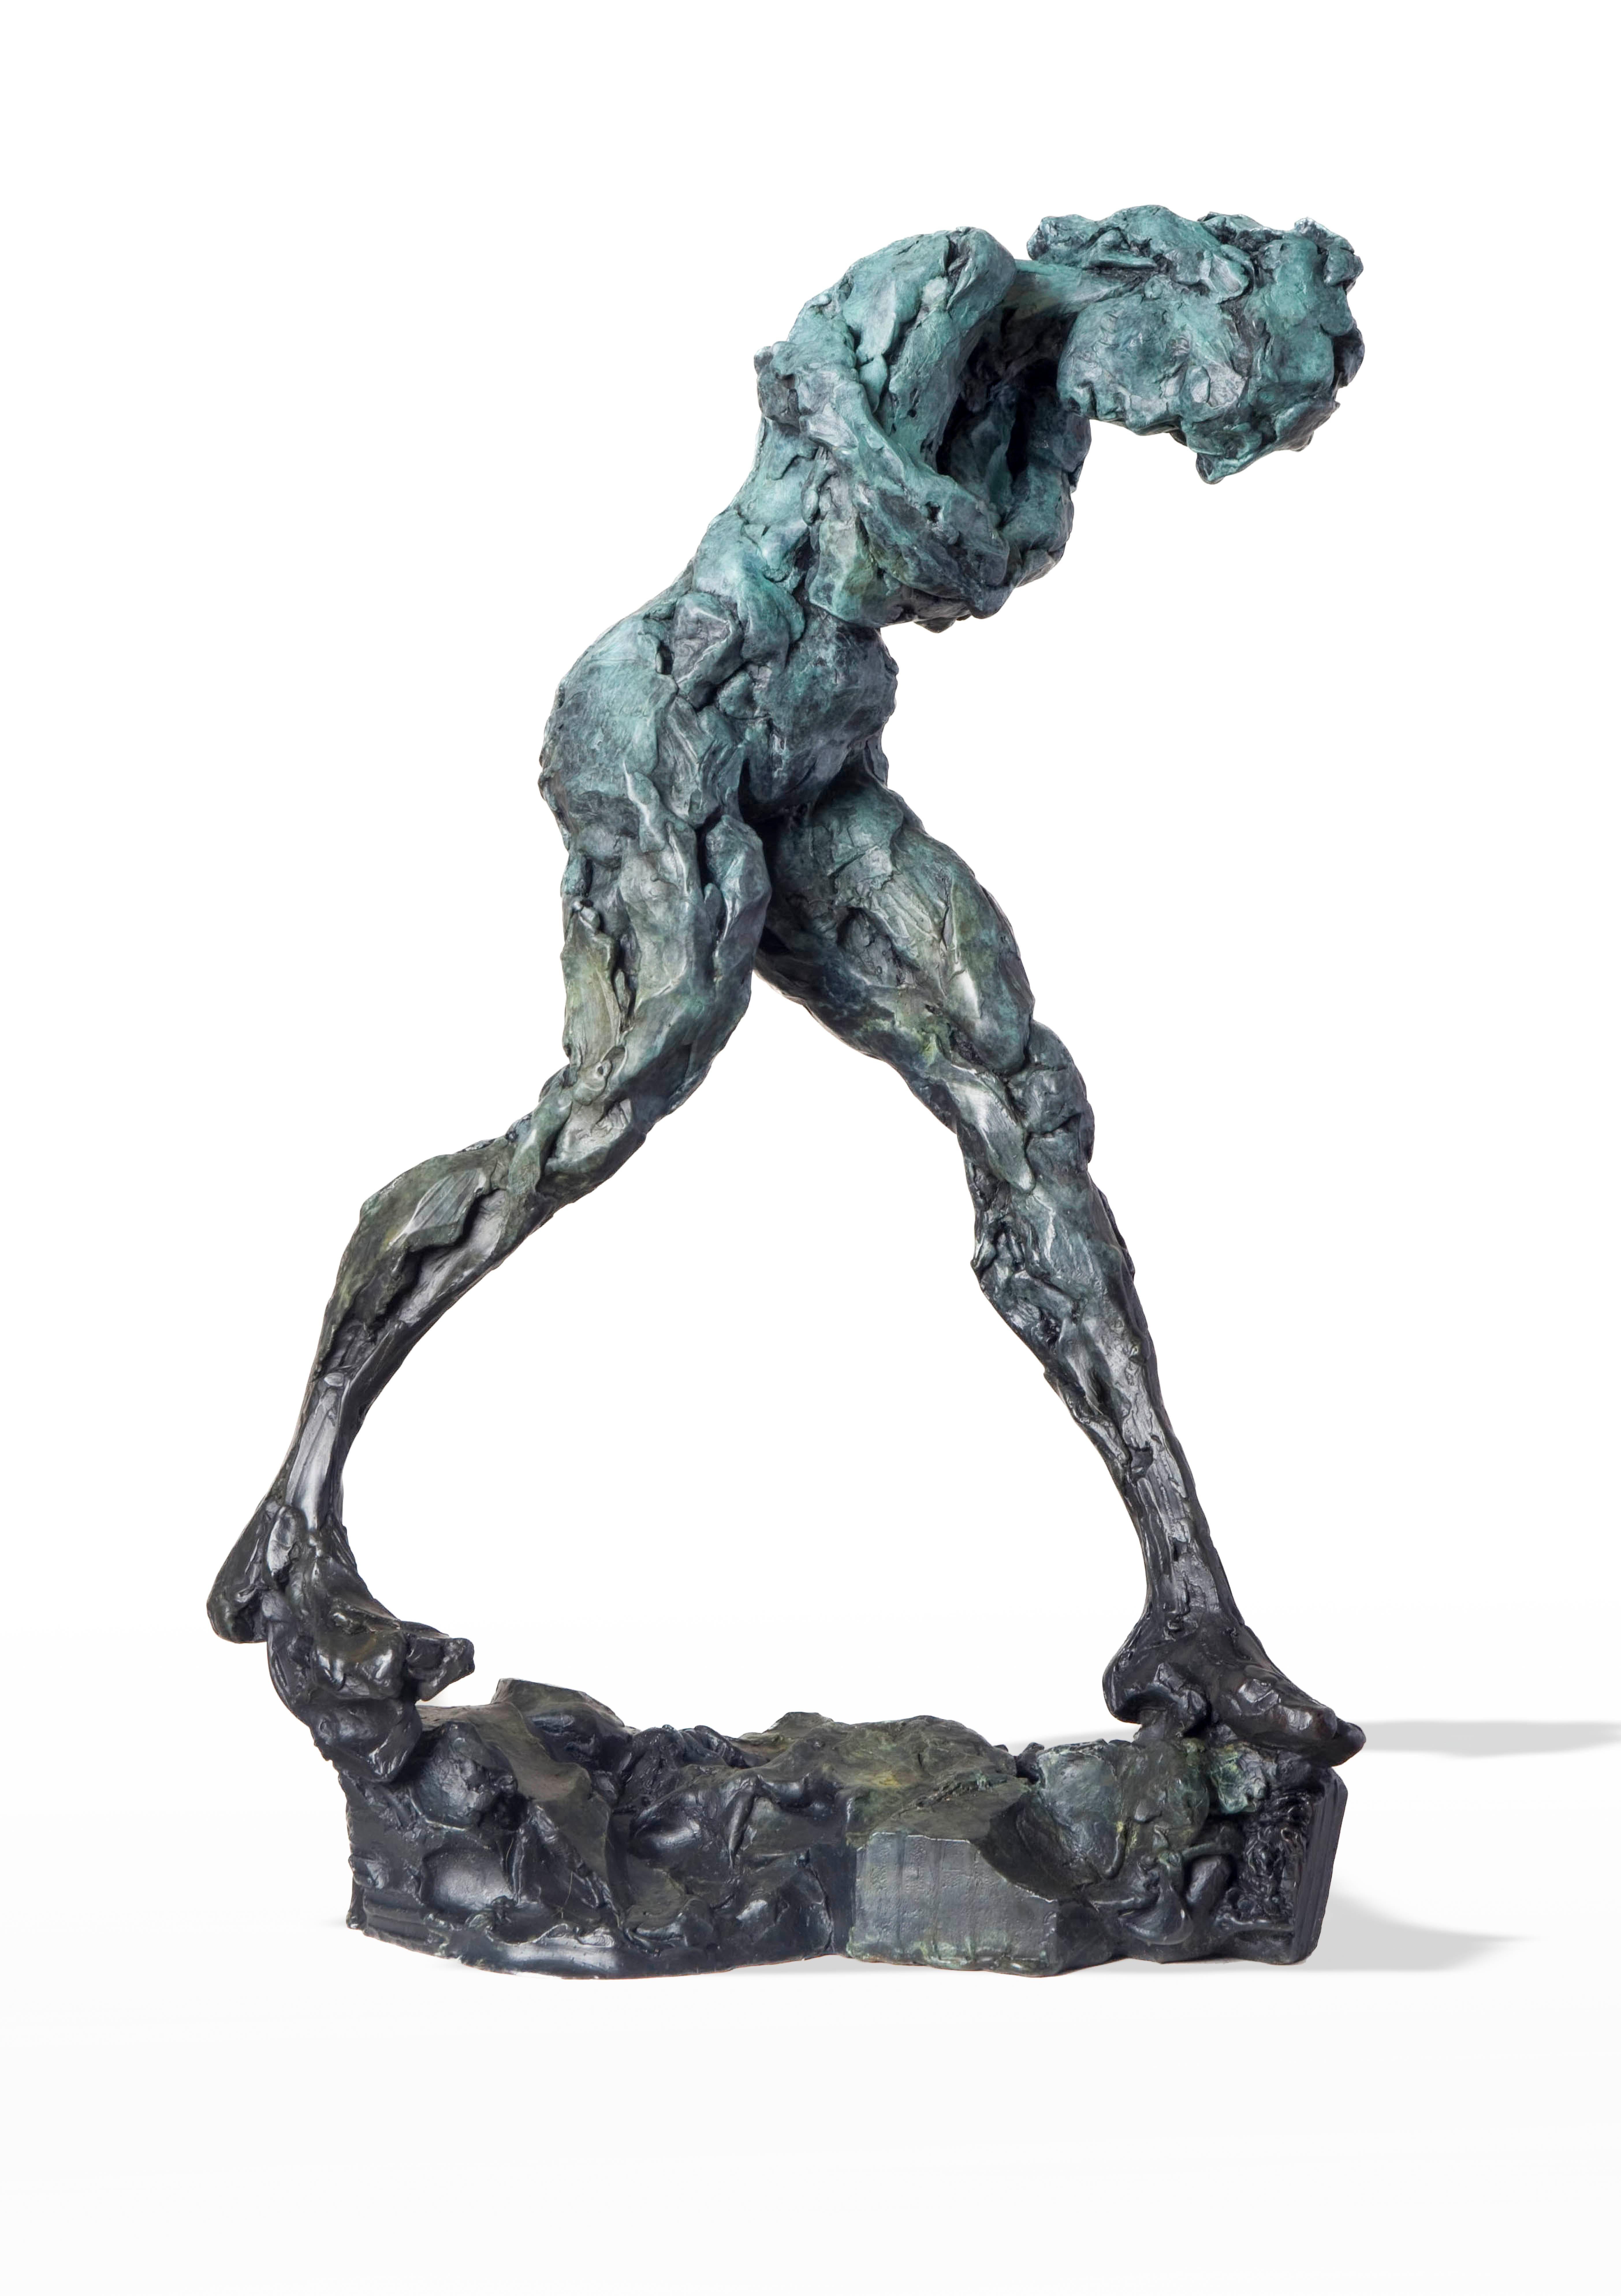 Richard Tosczak Nude Sculpture – Geist der Schwerkraft  - Emotiv, nackt, weiblich, figurativ, Bronzestatuette